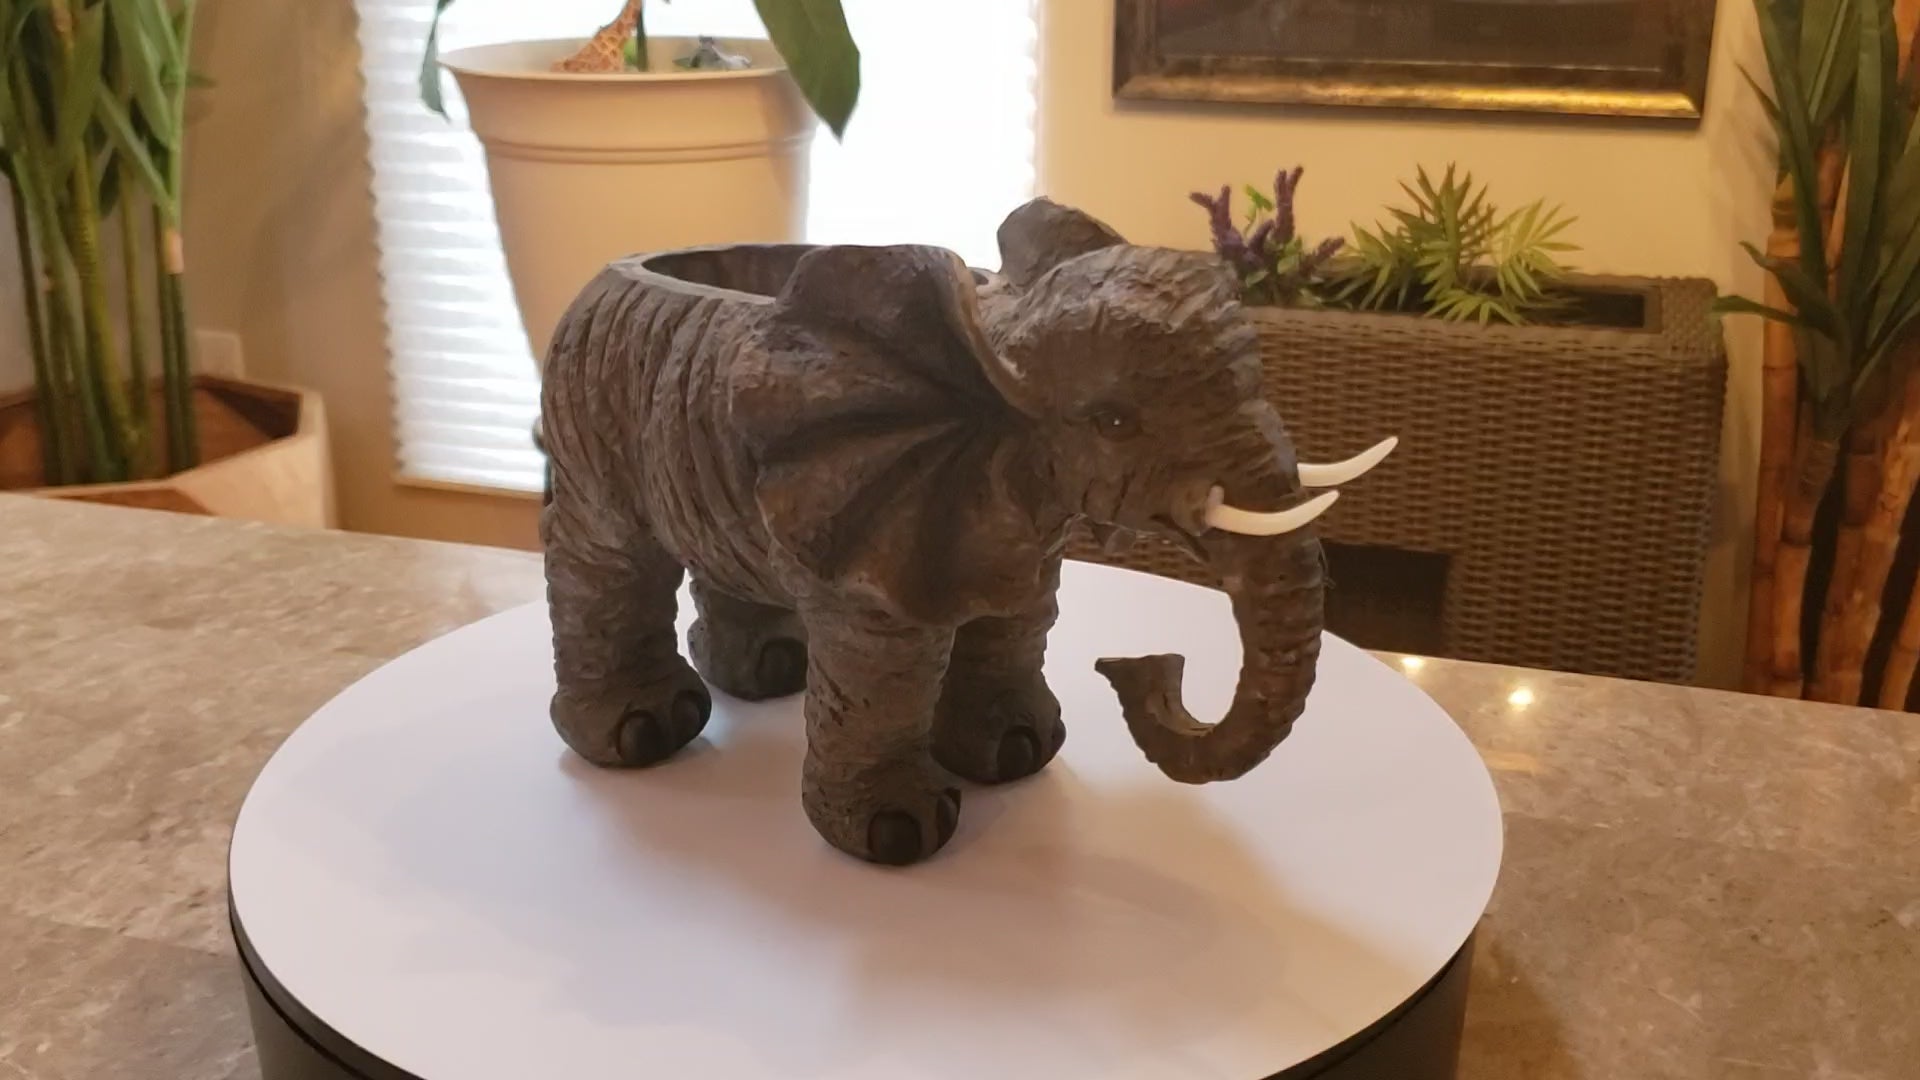 Auction for sale elephant planter statue